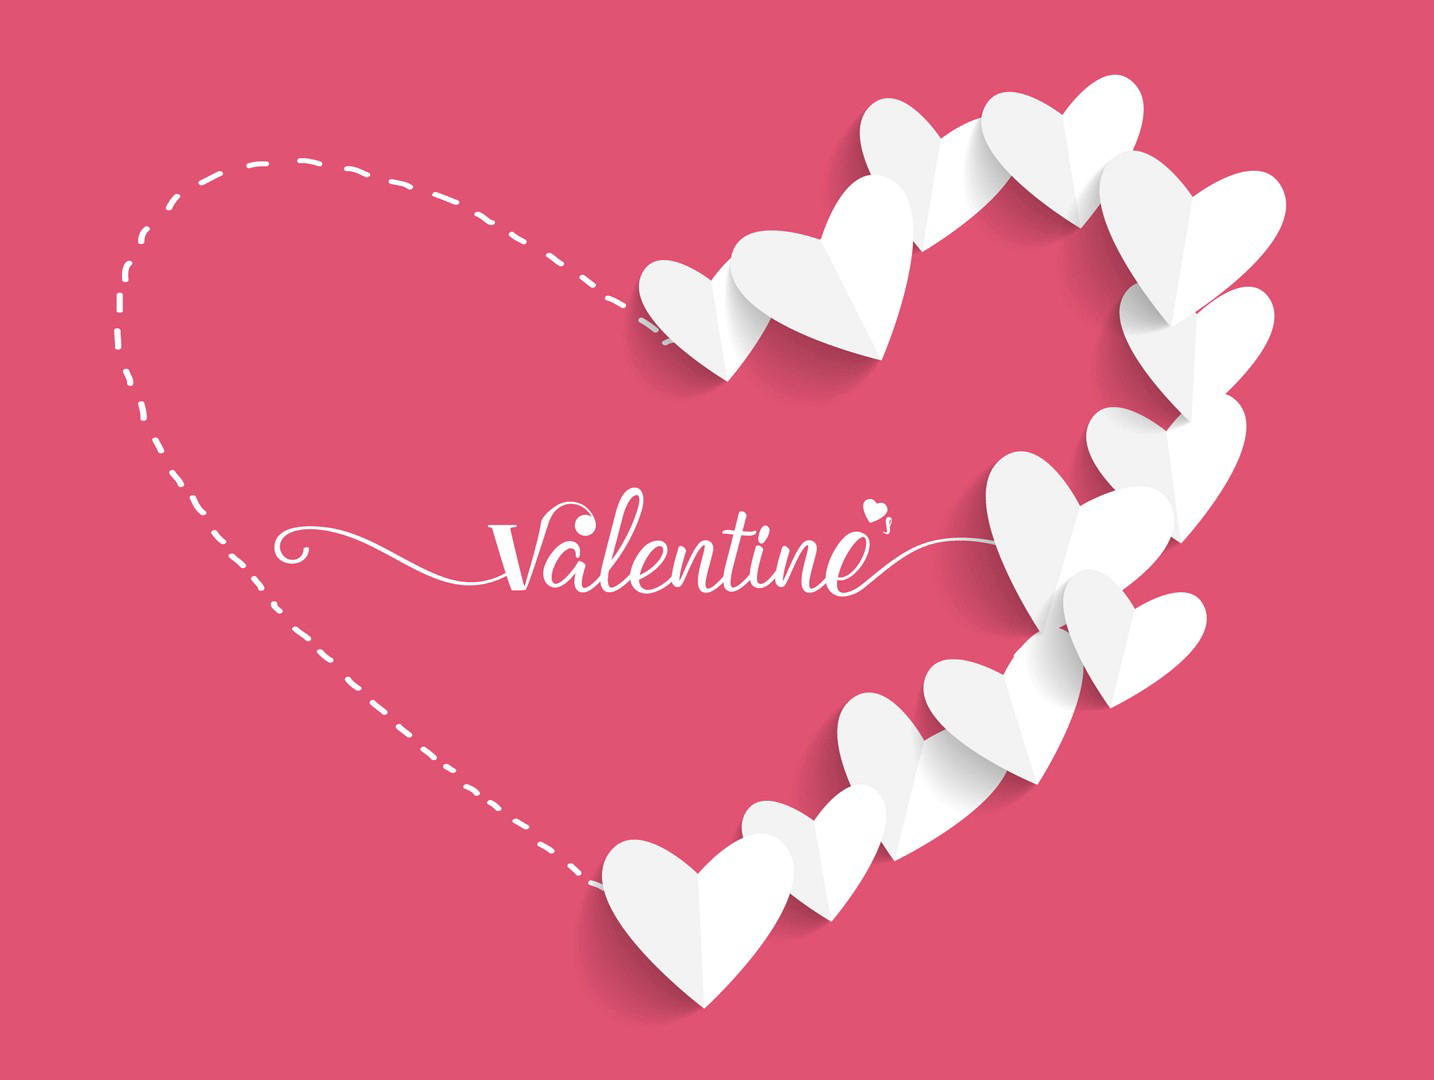 Valentine là ngày gì? ý nghĩa và thời điểm diễn ra?